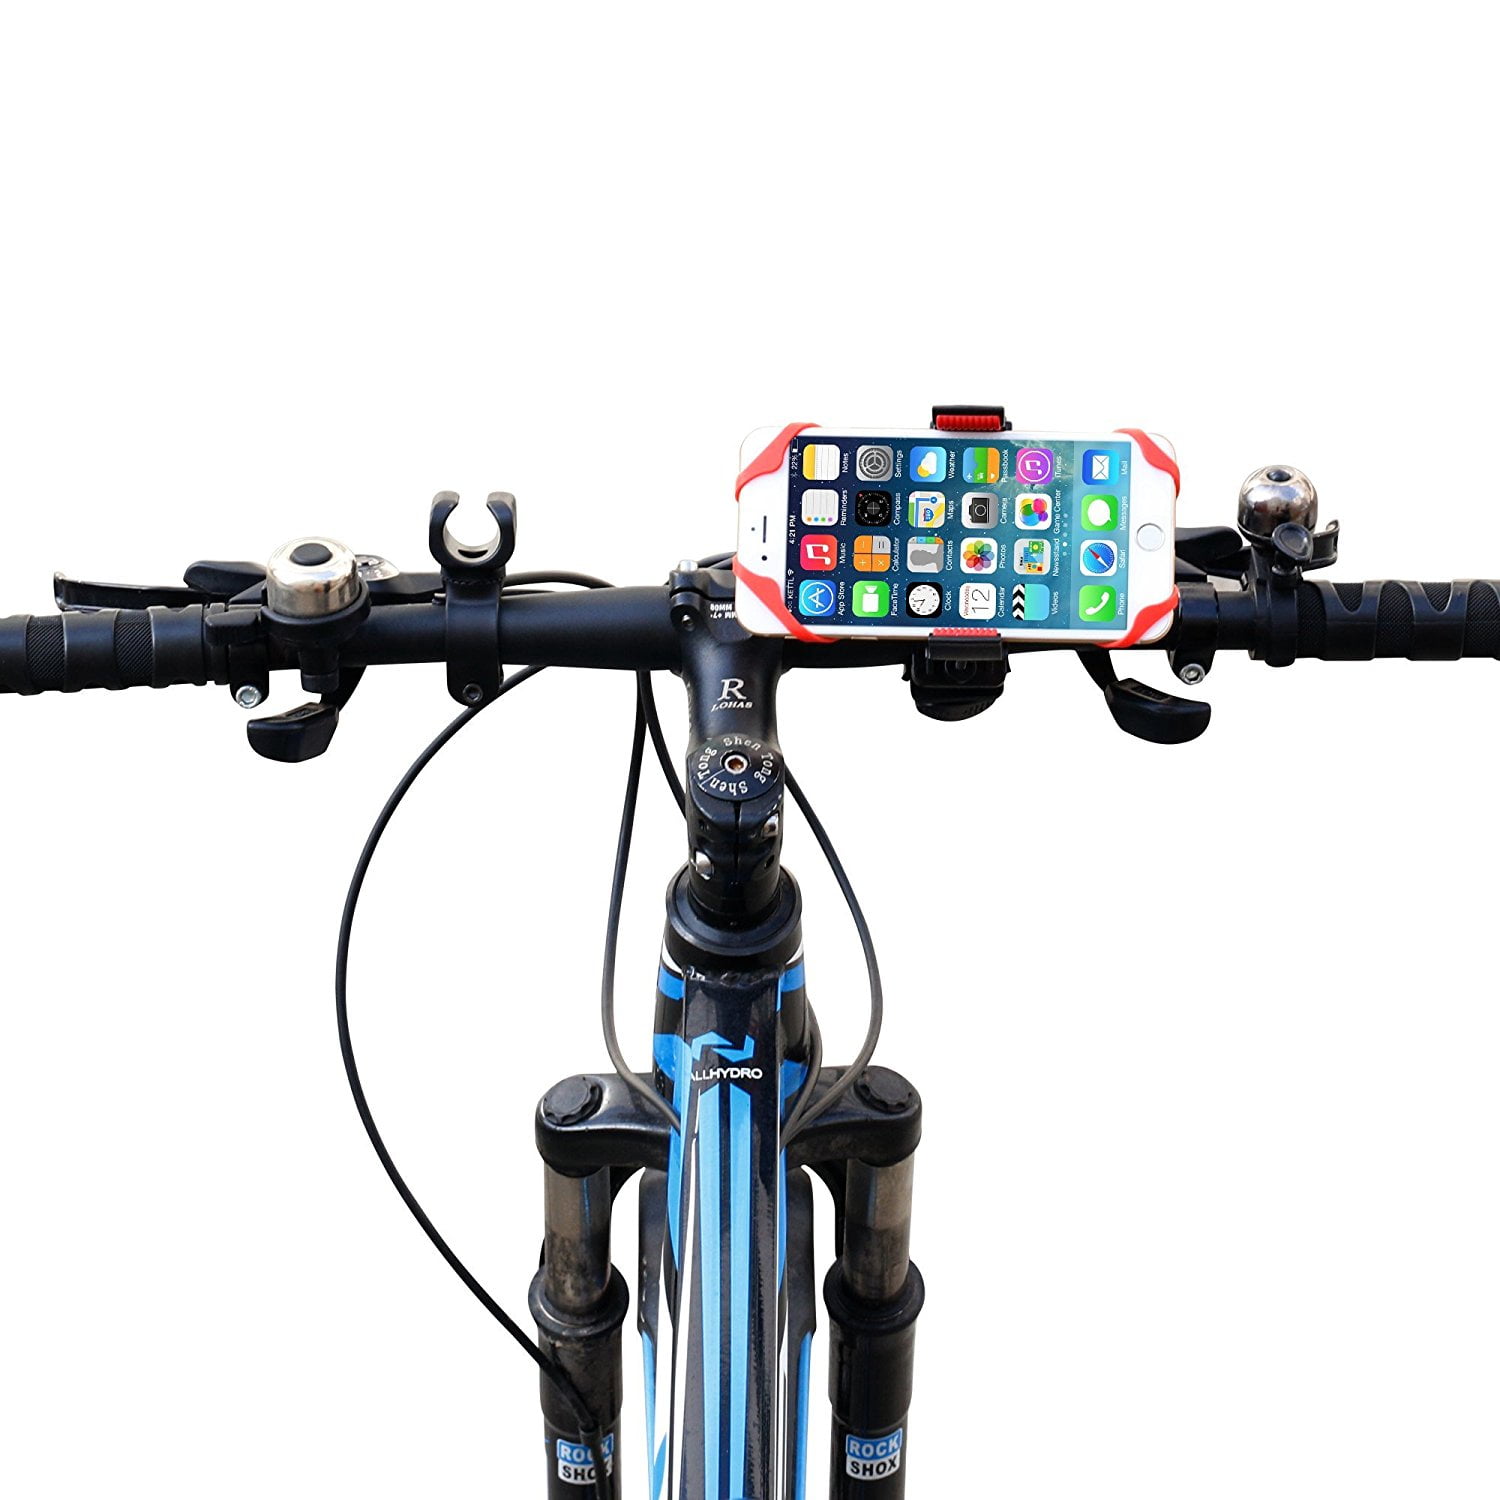 cell phone holder for bike walmart